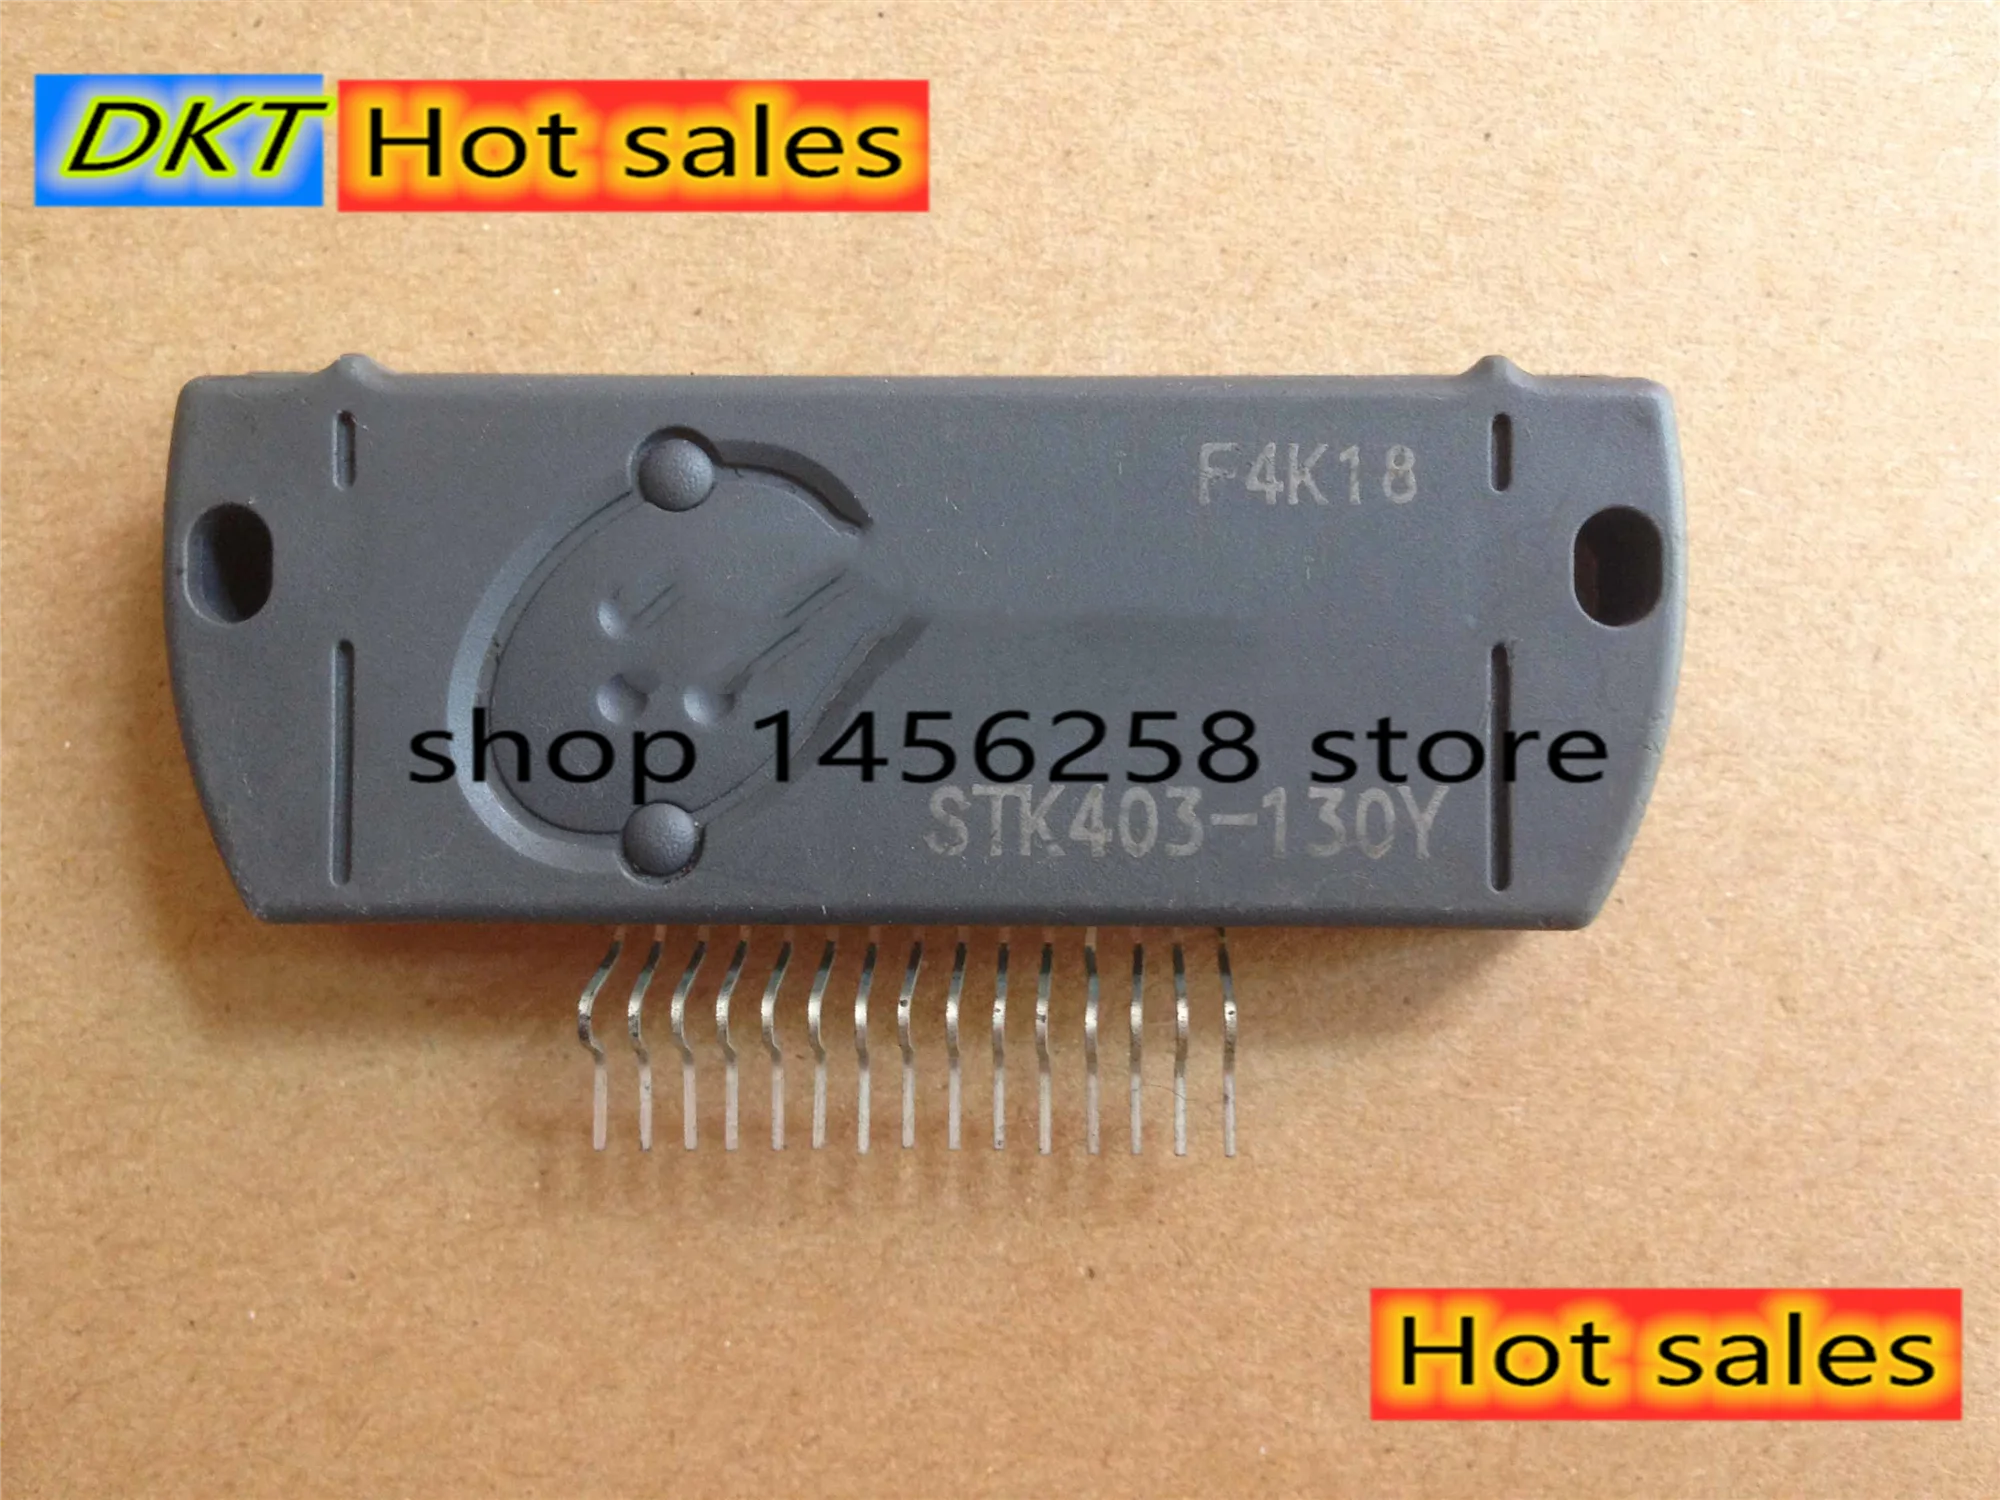 For stk403-130 stk403-130y amplifier module inline zip15 Foot 